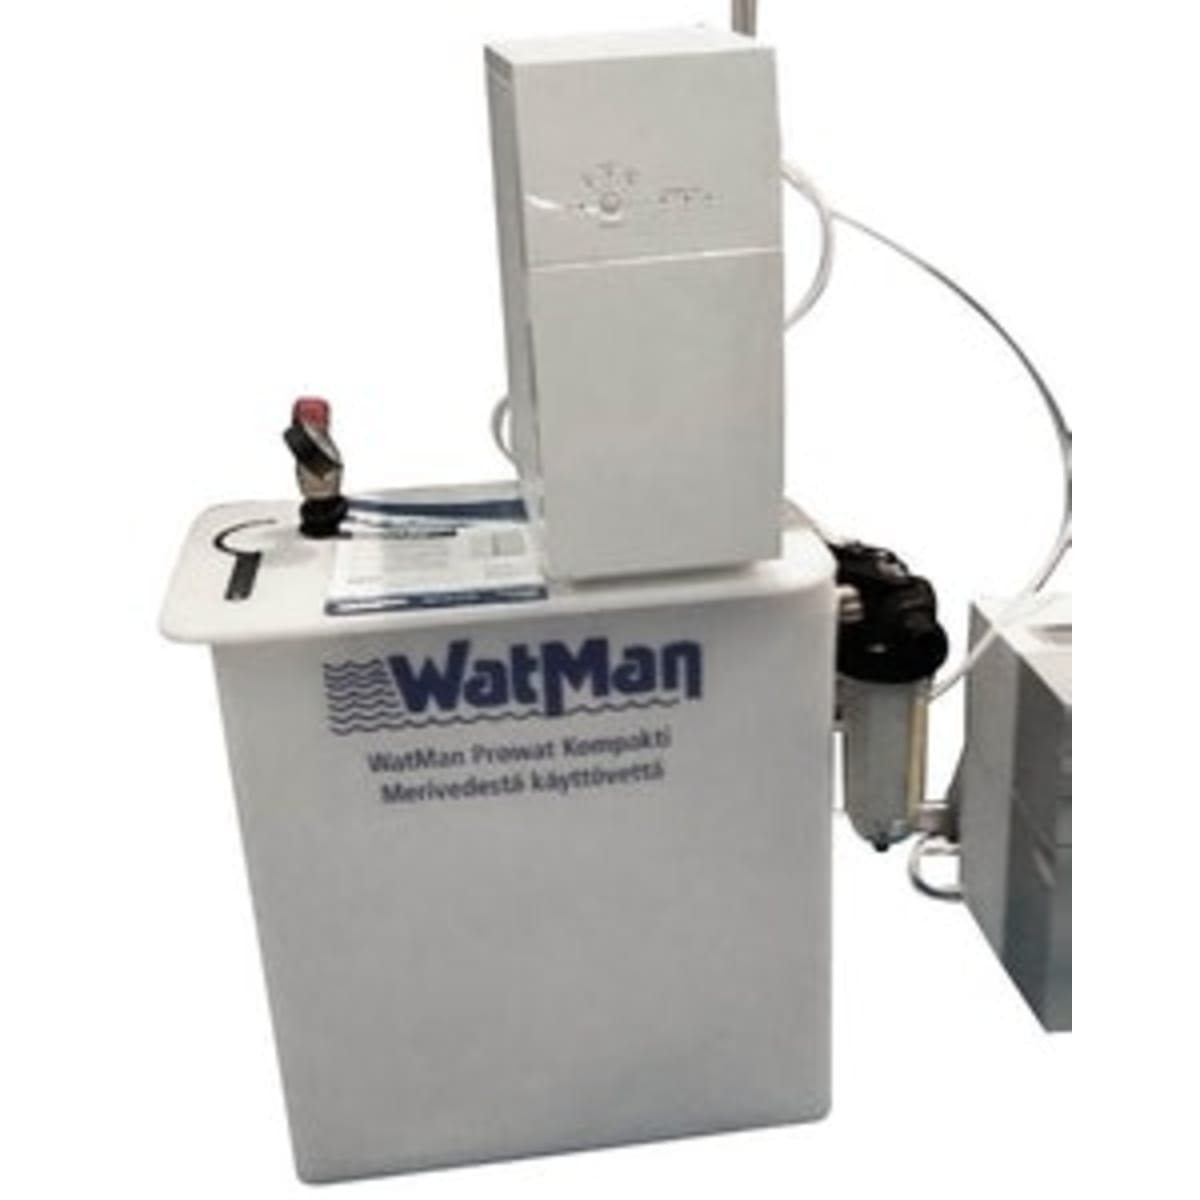 Watman Pro Kompakti 400 merivedelle puhdasvesilaitos   verkkokauppa